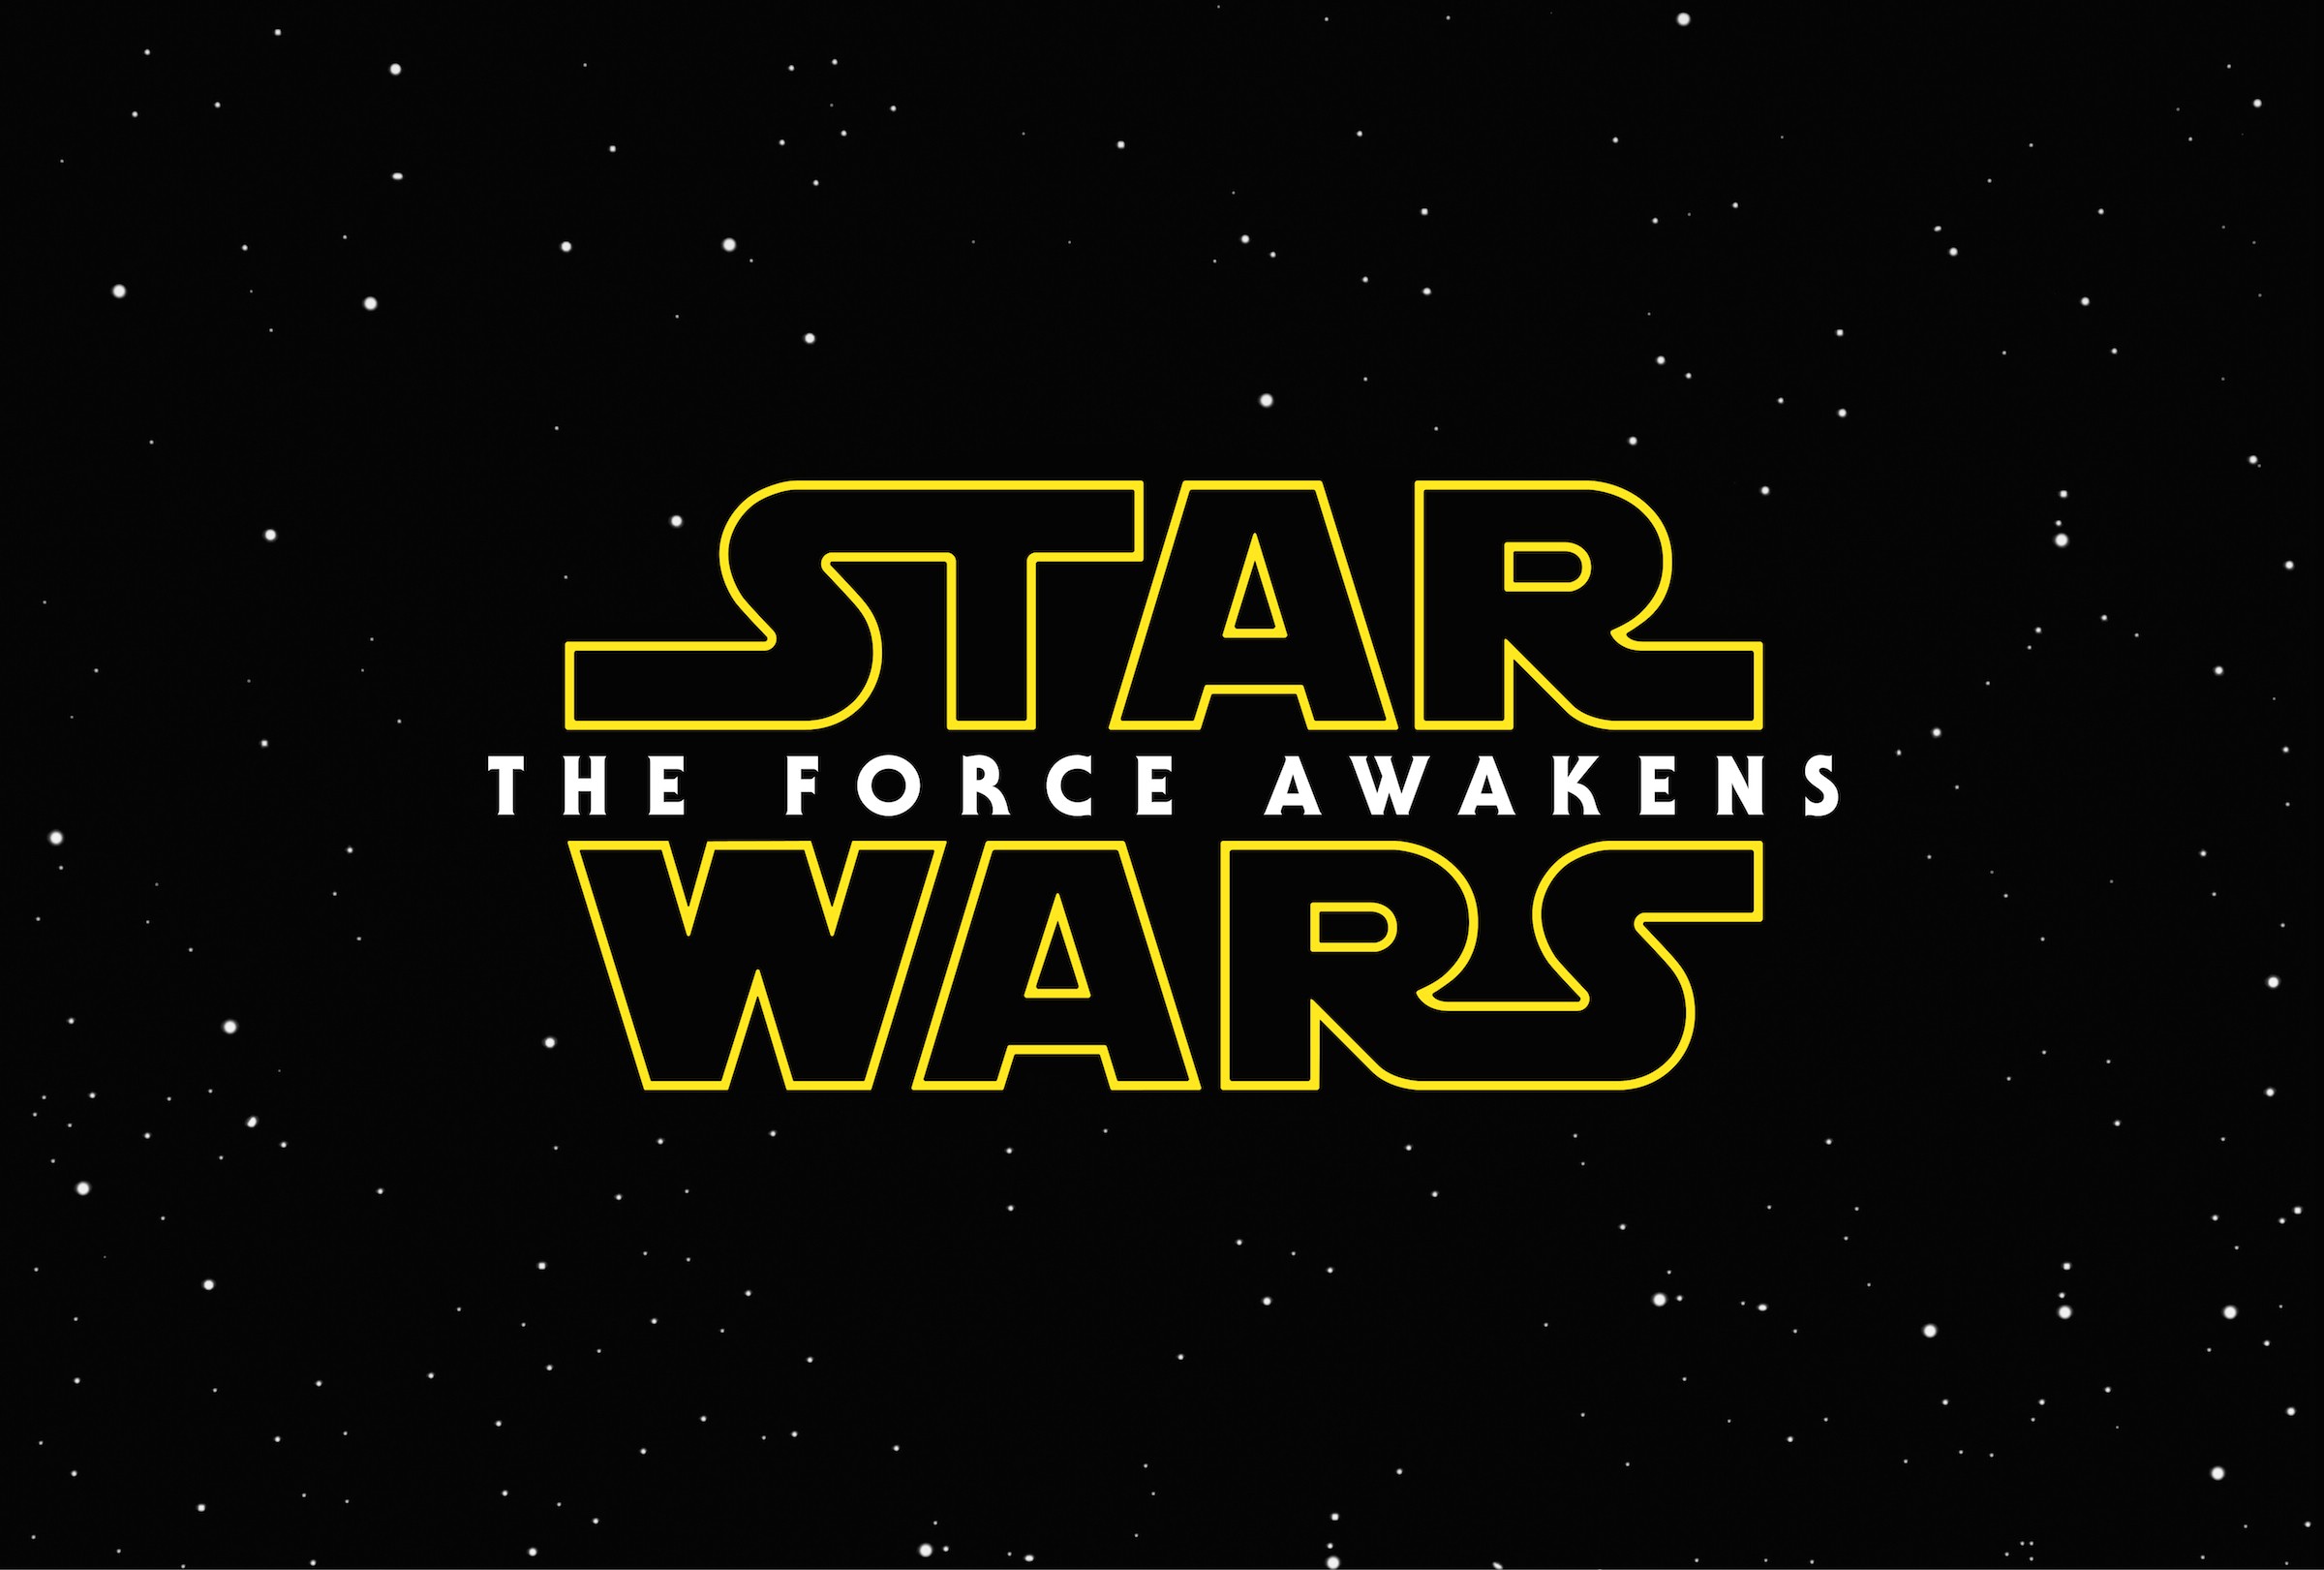 10 maneiras pelas quais o despertar da força mudou Star Wars para